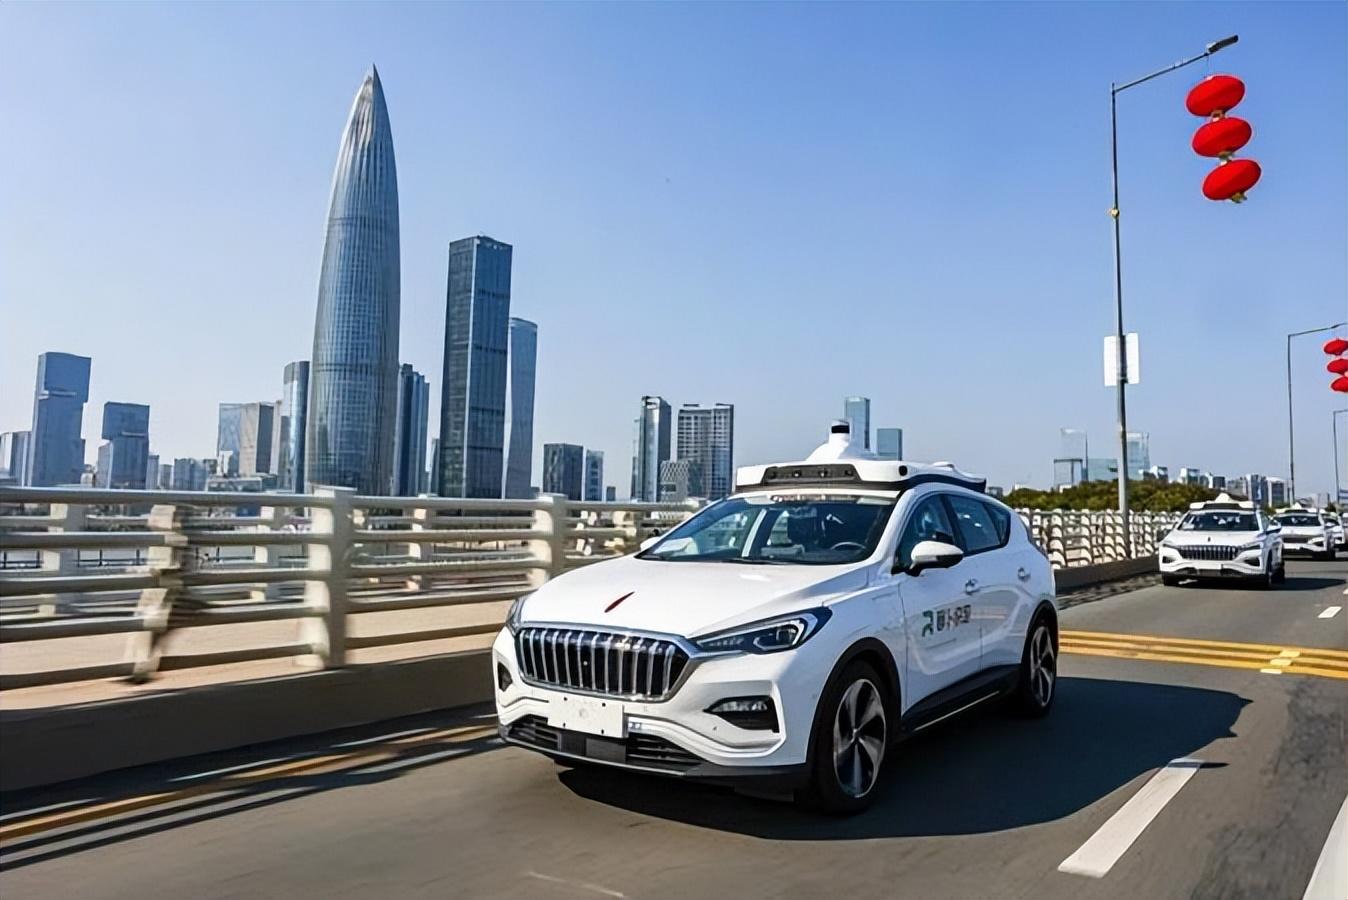 深圳将新增89公里自动驾驶测试路段